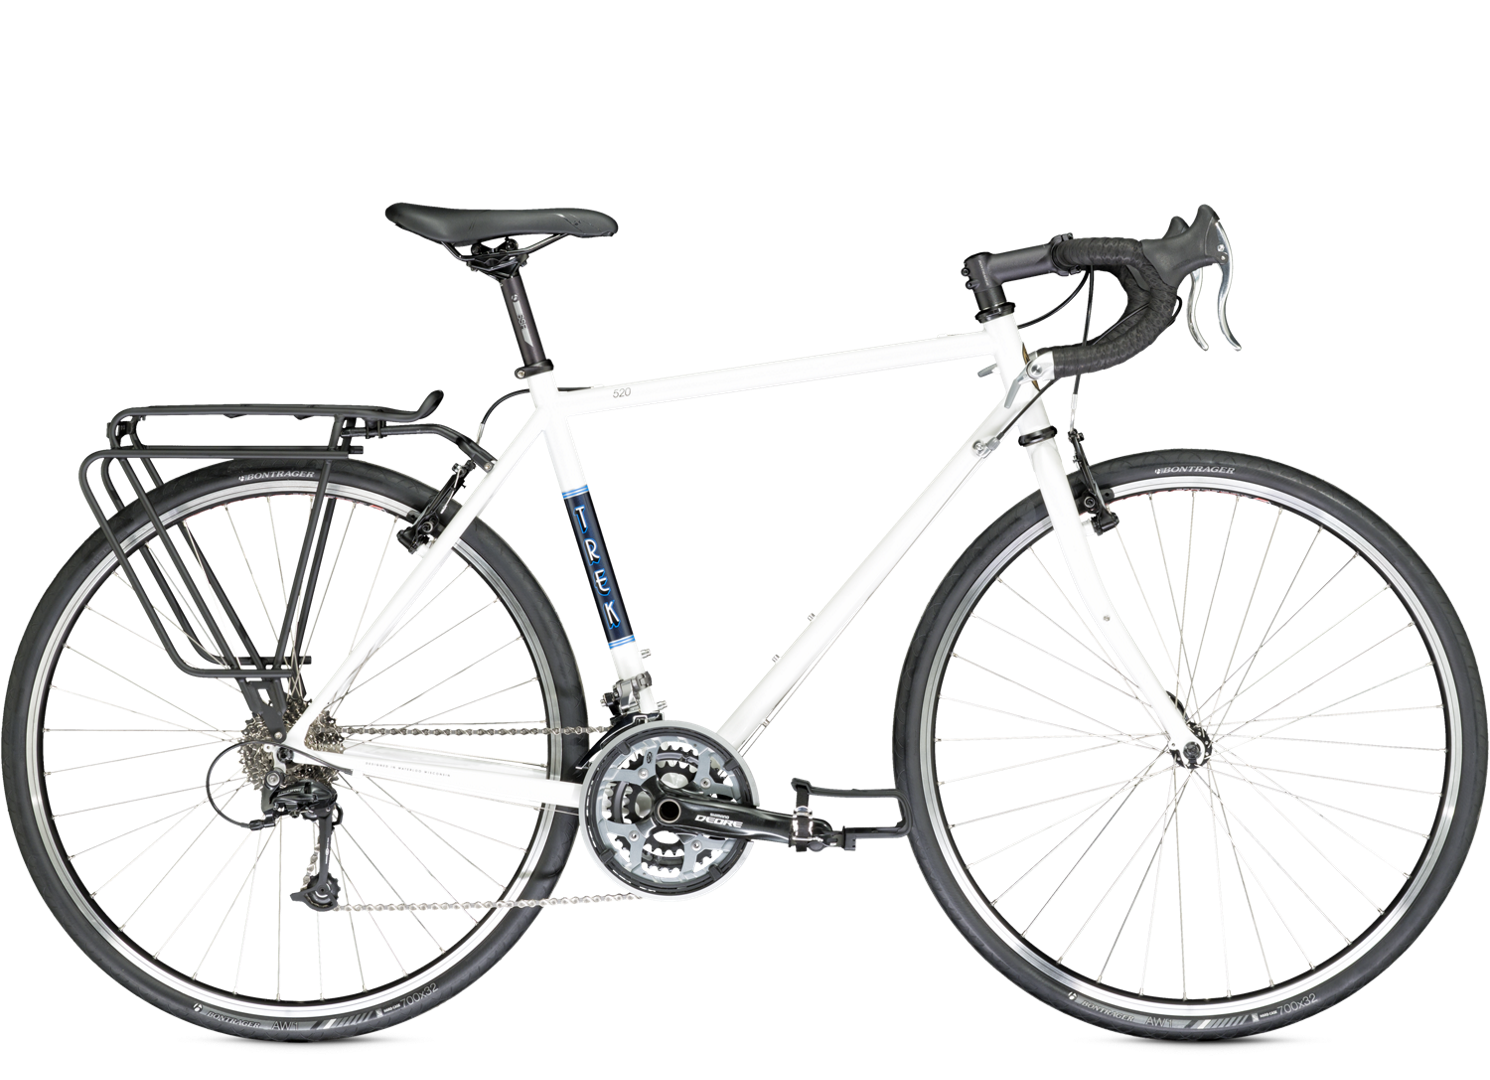 vrouwelijk rek Goed opgeleid 2014 520 - Bike Archive - Trek Bicycle